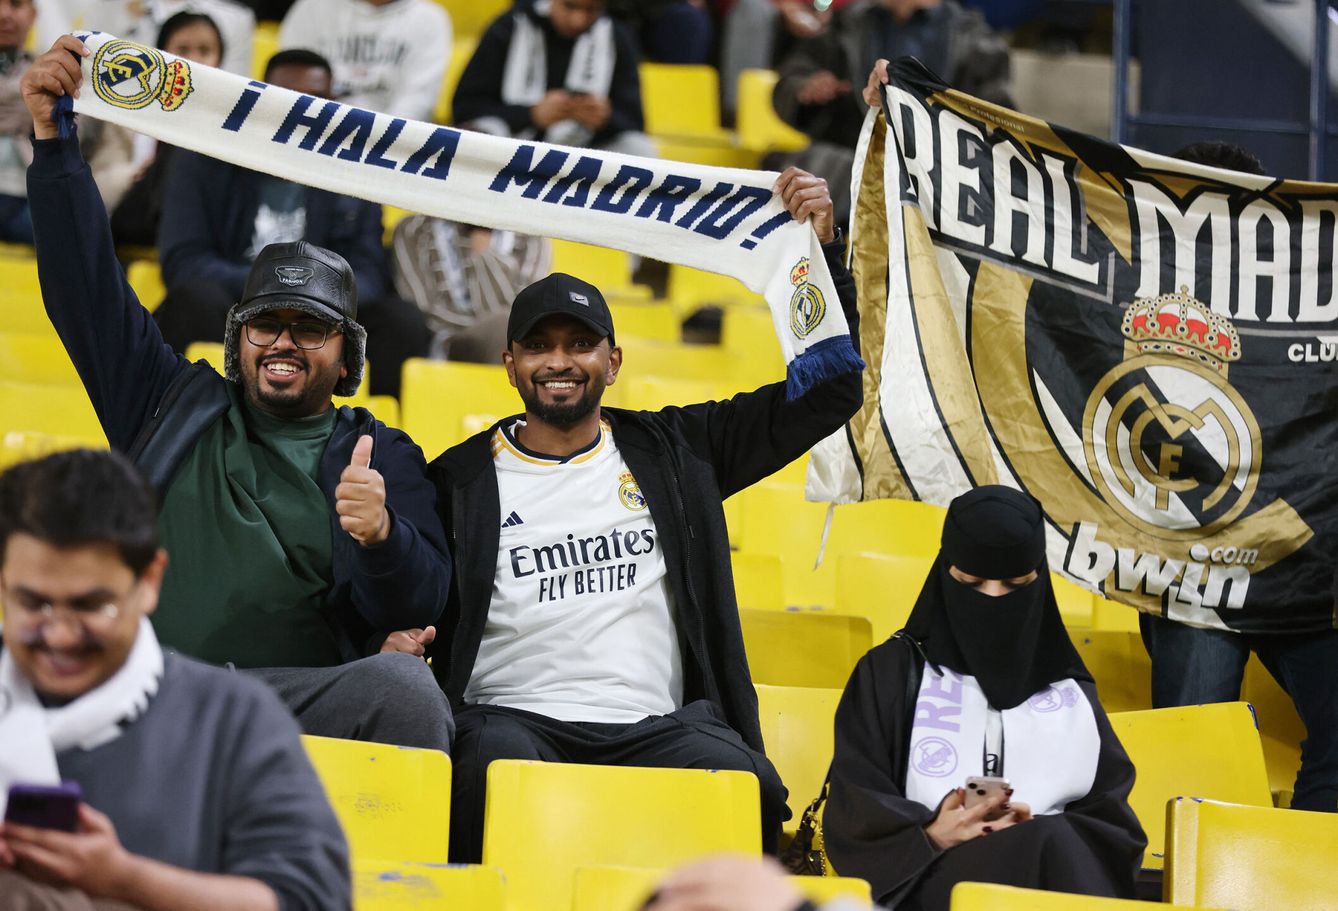 Aficionados y una aficionada del Real Madrid, en Arabia. (Reuters/Ahmed Yosri)